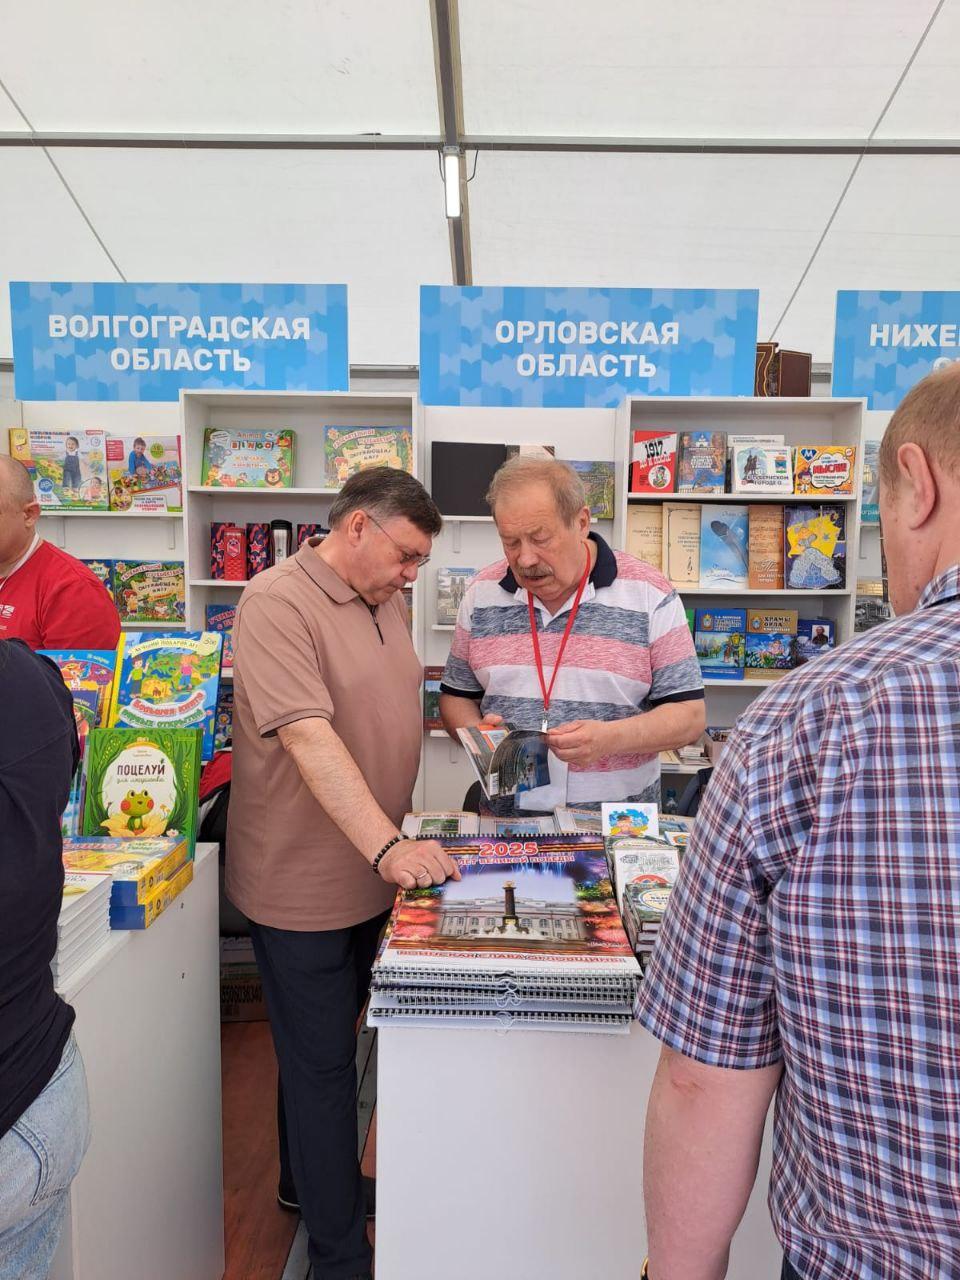 Орловская область представили свои издания на книжном фестивале «Красная площадь»